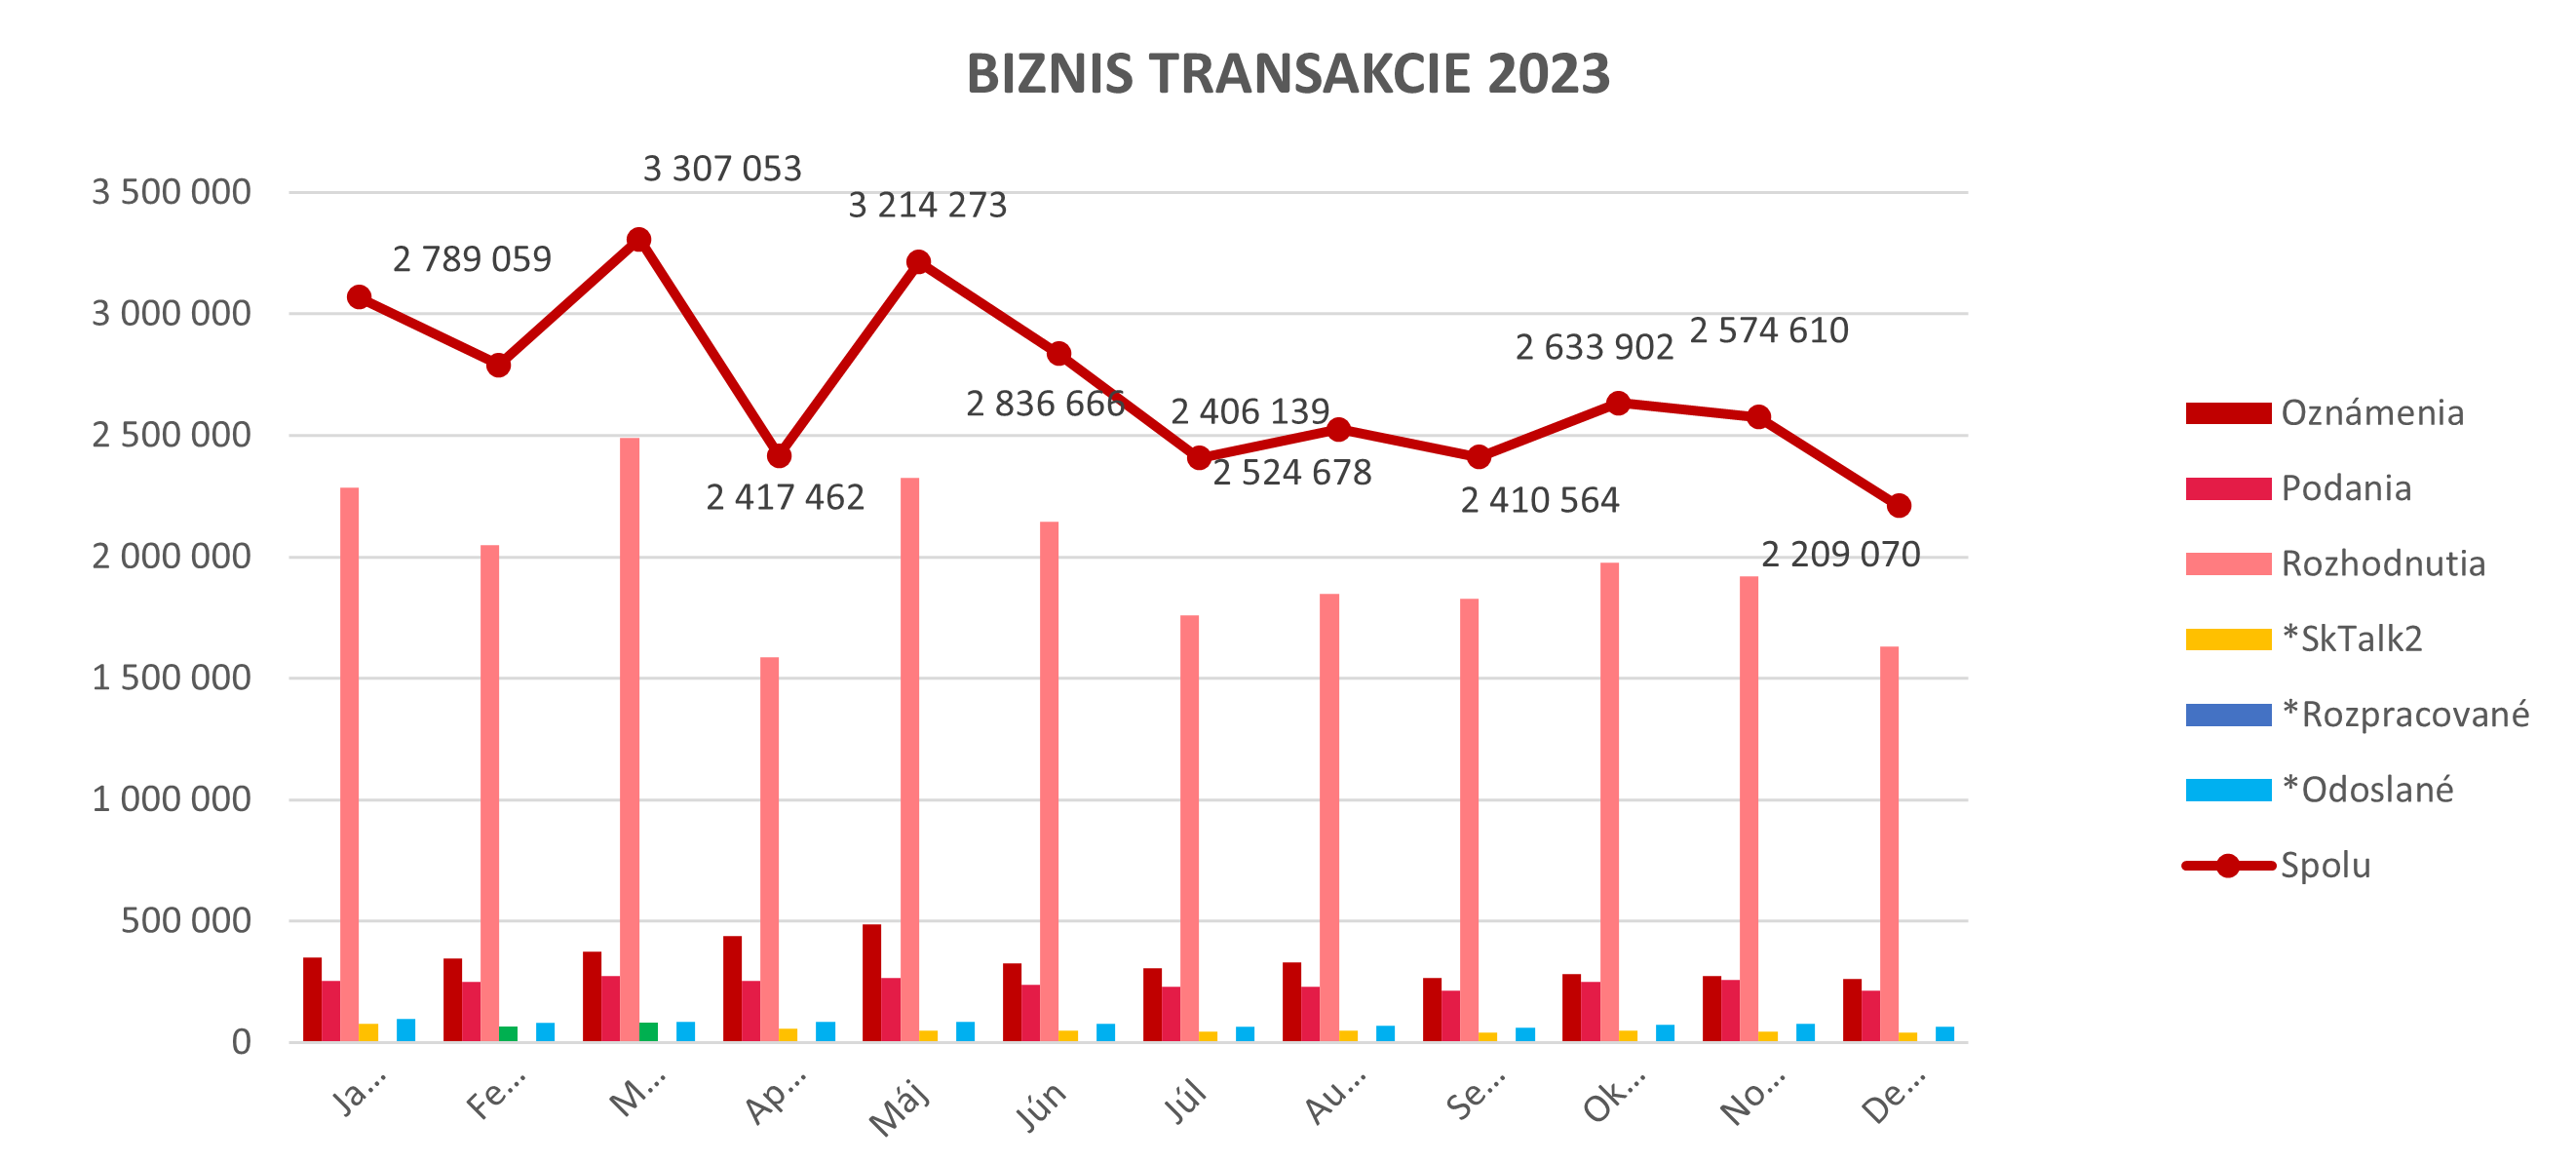 Ilustračný graf biznis transakcií za rok 2023.